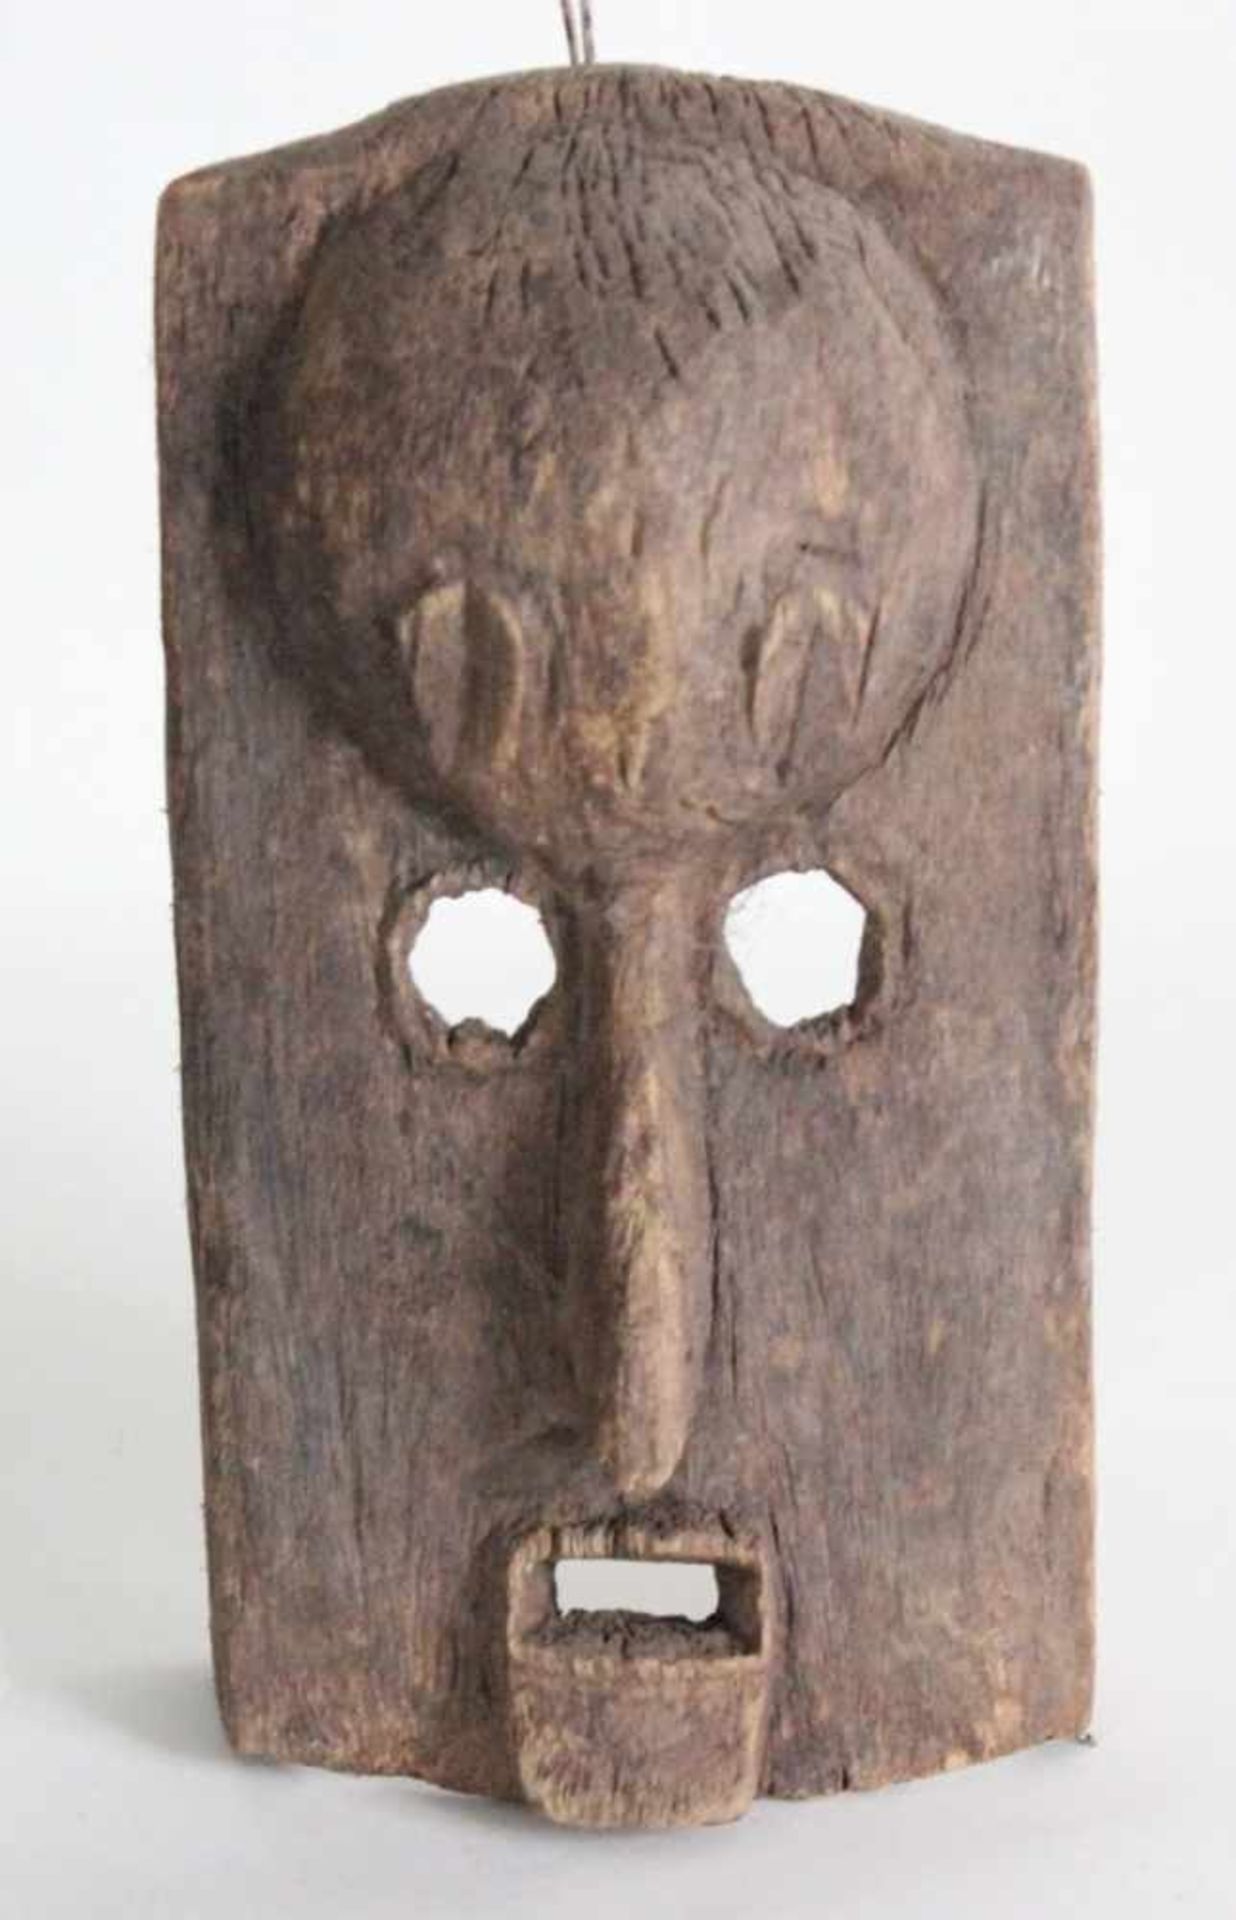 Tanzmaske - Bambara/Mali Holz, Beule auf Stirn als Symbol des Geistes, offener Mund, Höhe ca. 30 cm,